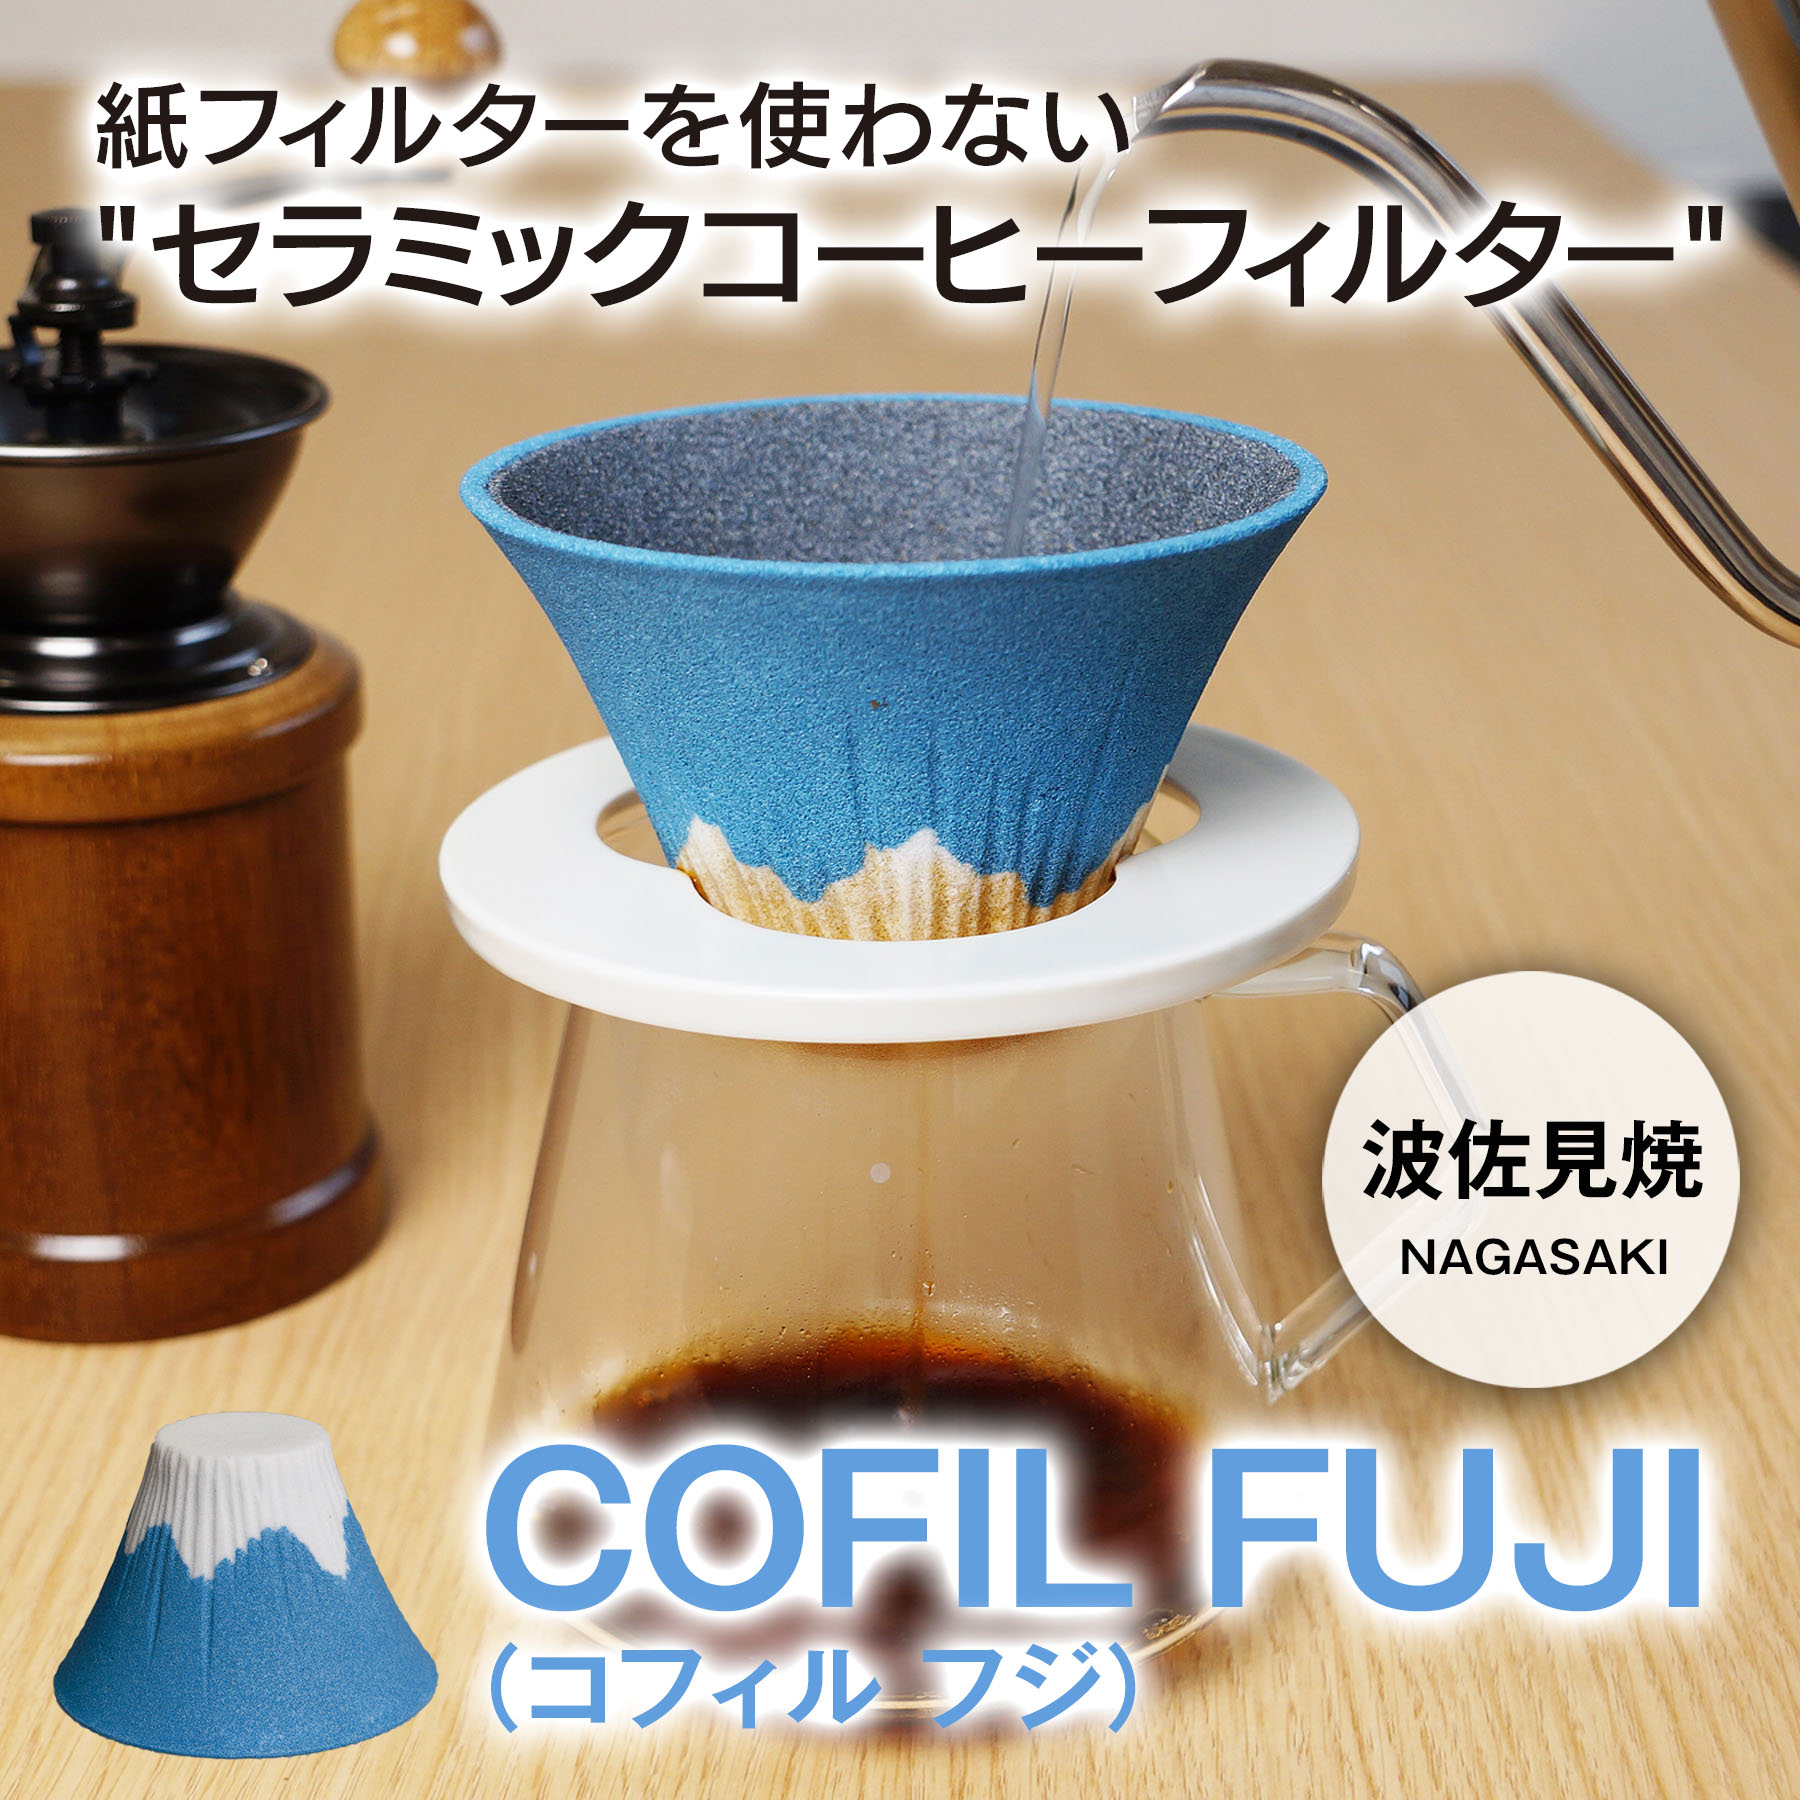 セラミックコーヒーフィルター「COFIL FUJI」コフィルフジ